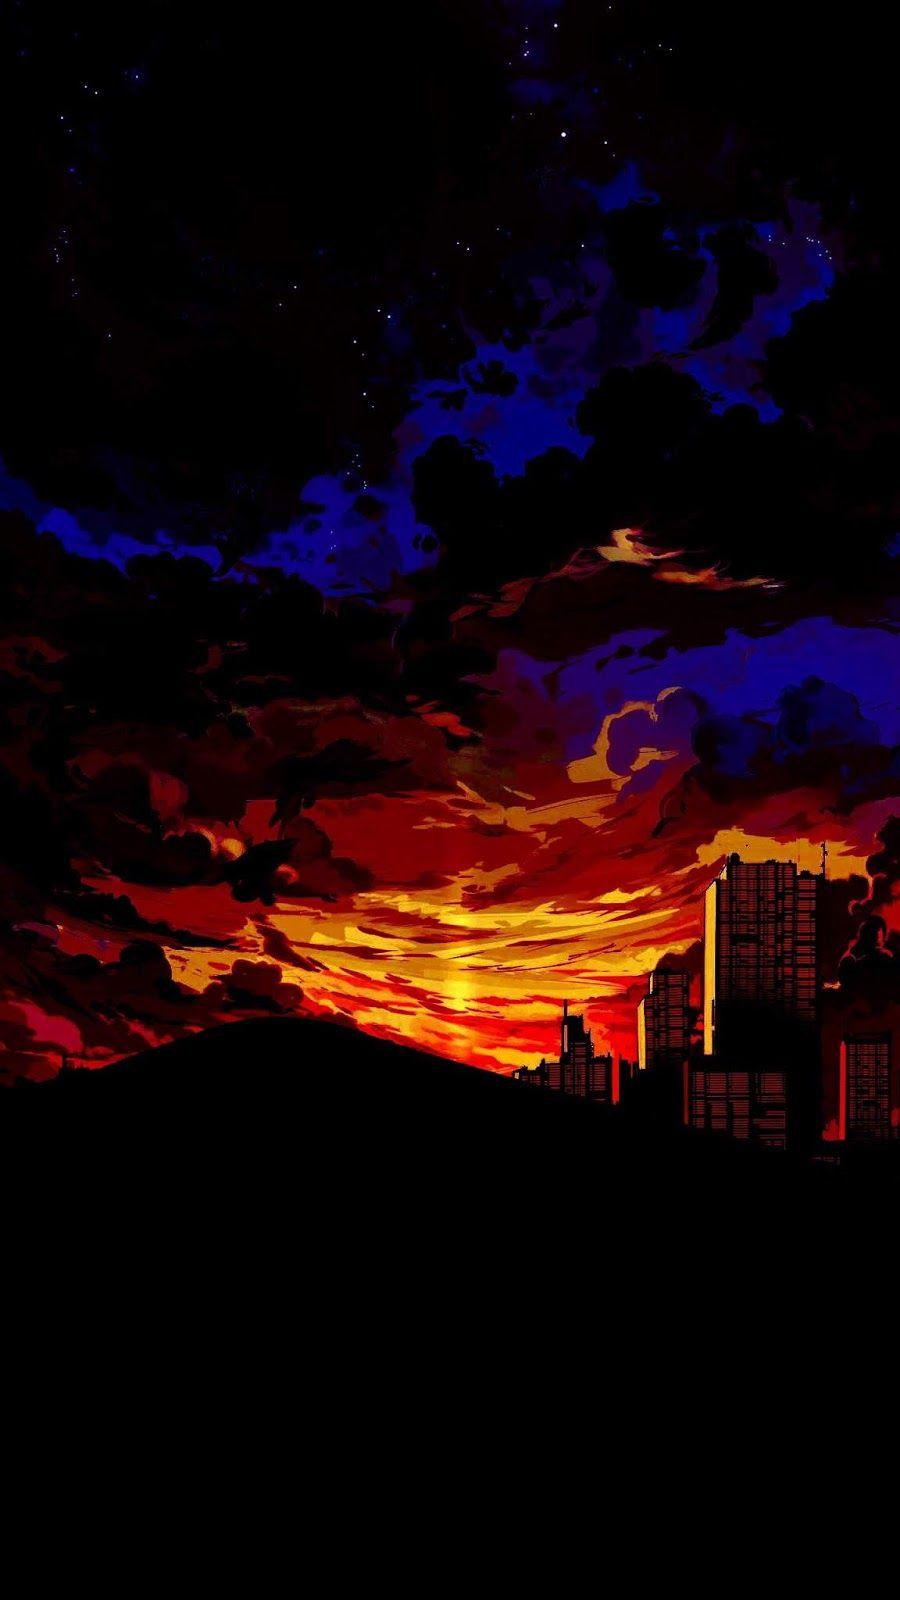 Anime Sunset in the Desert. Landscape wallpaper, Aesthetic